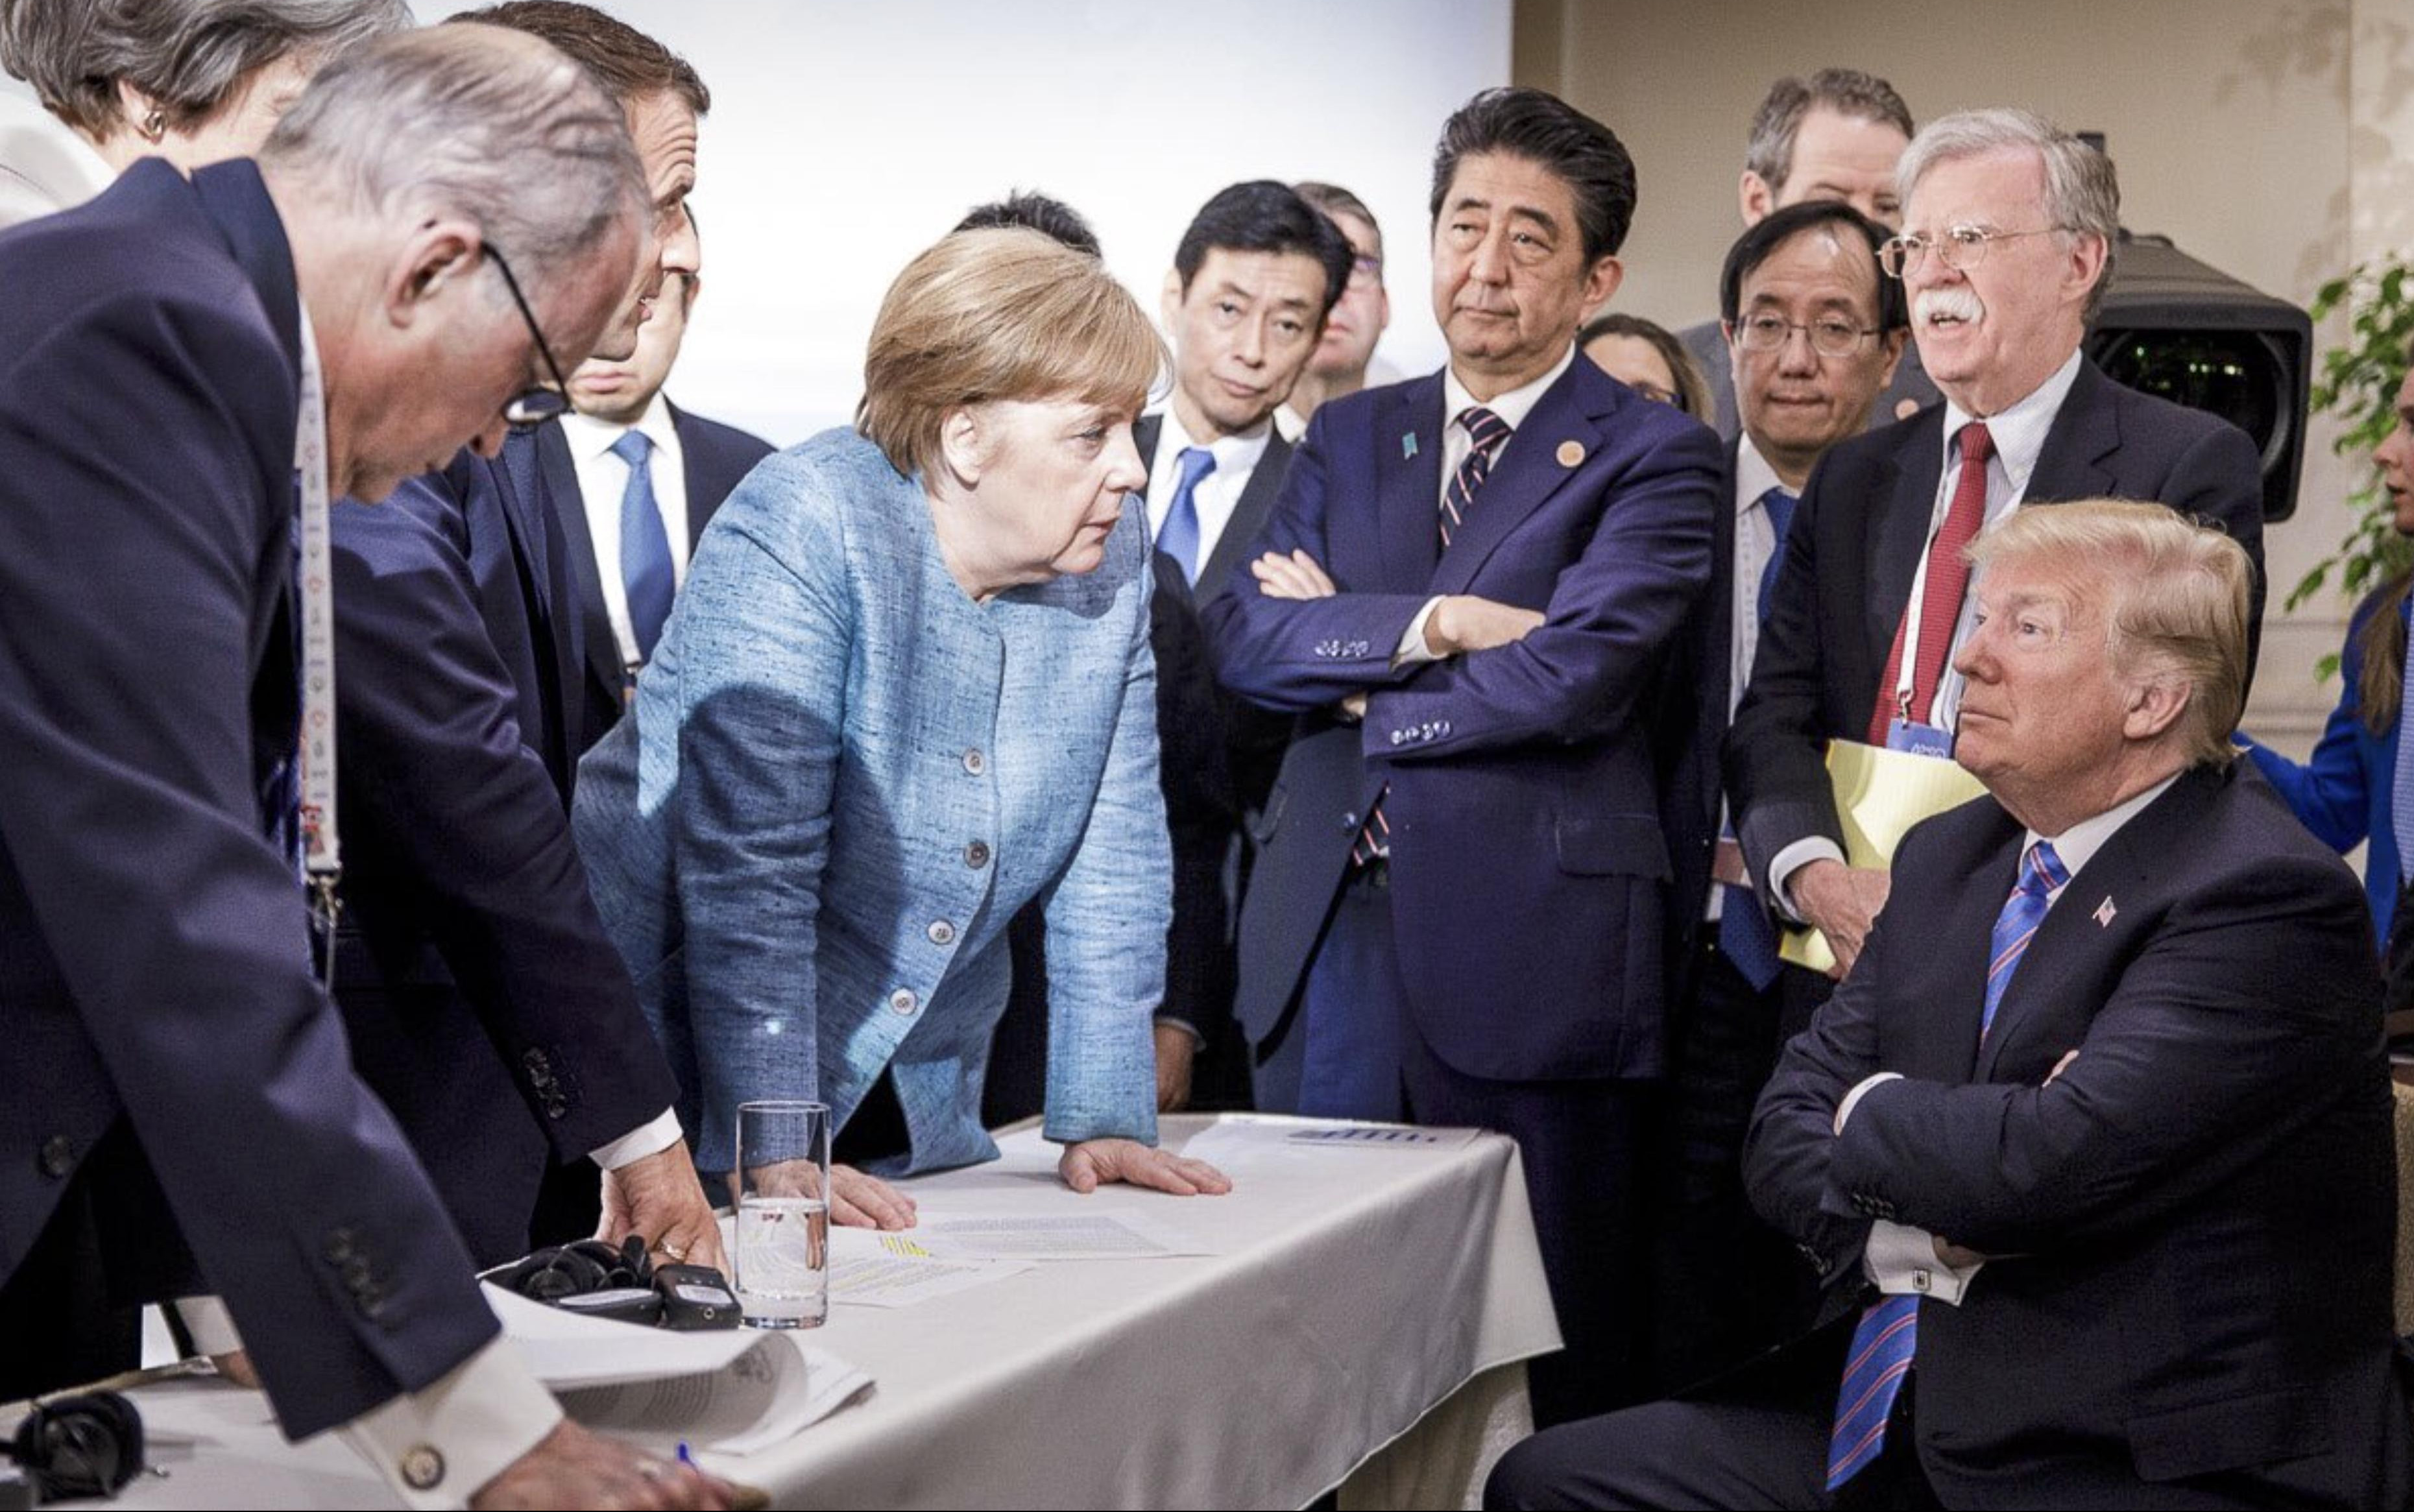 (FOTO) EVO KAKO VELIKE SILE MONTIRAJU ISTINU! Jedna scena sa G7 na četiri fotografije PRIČA NEVEROVATNU PRIČU!